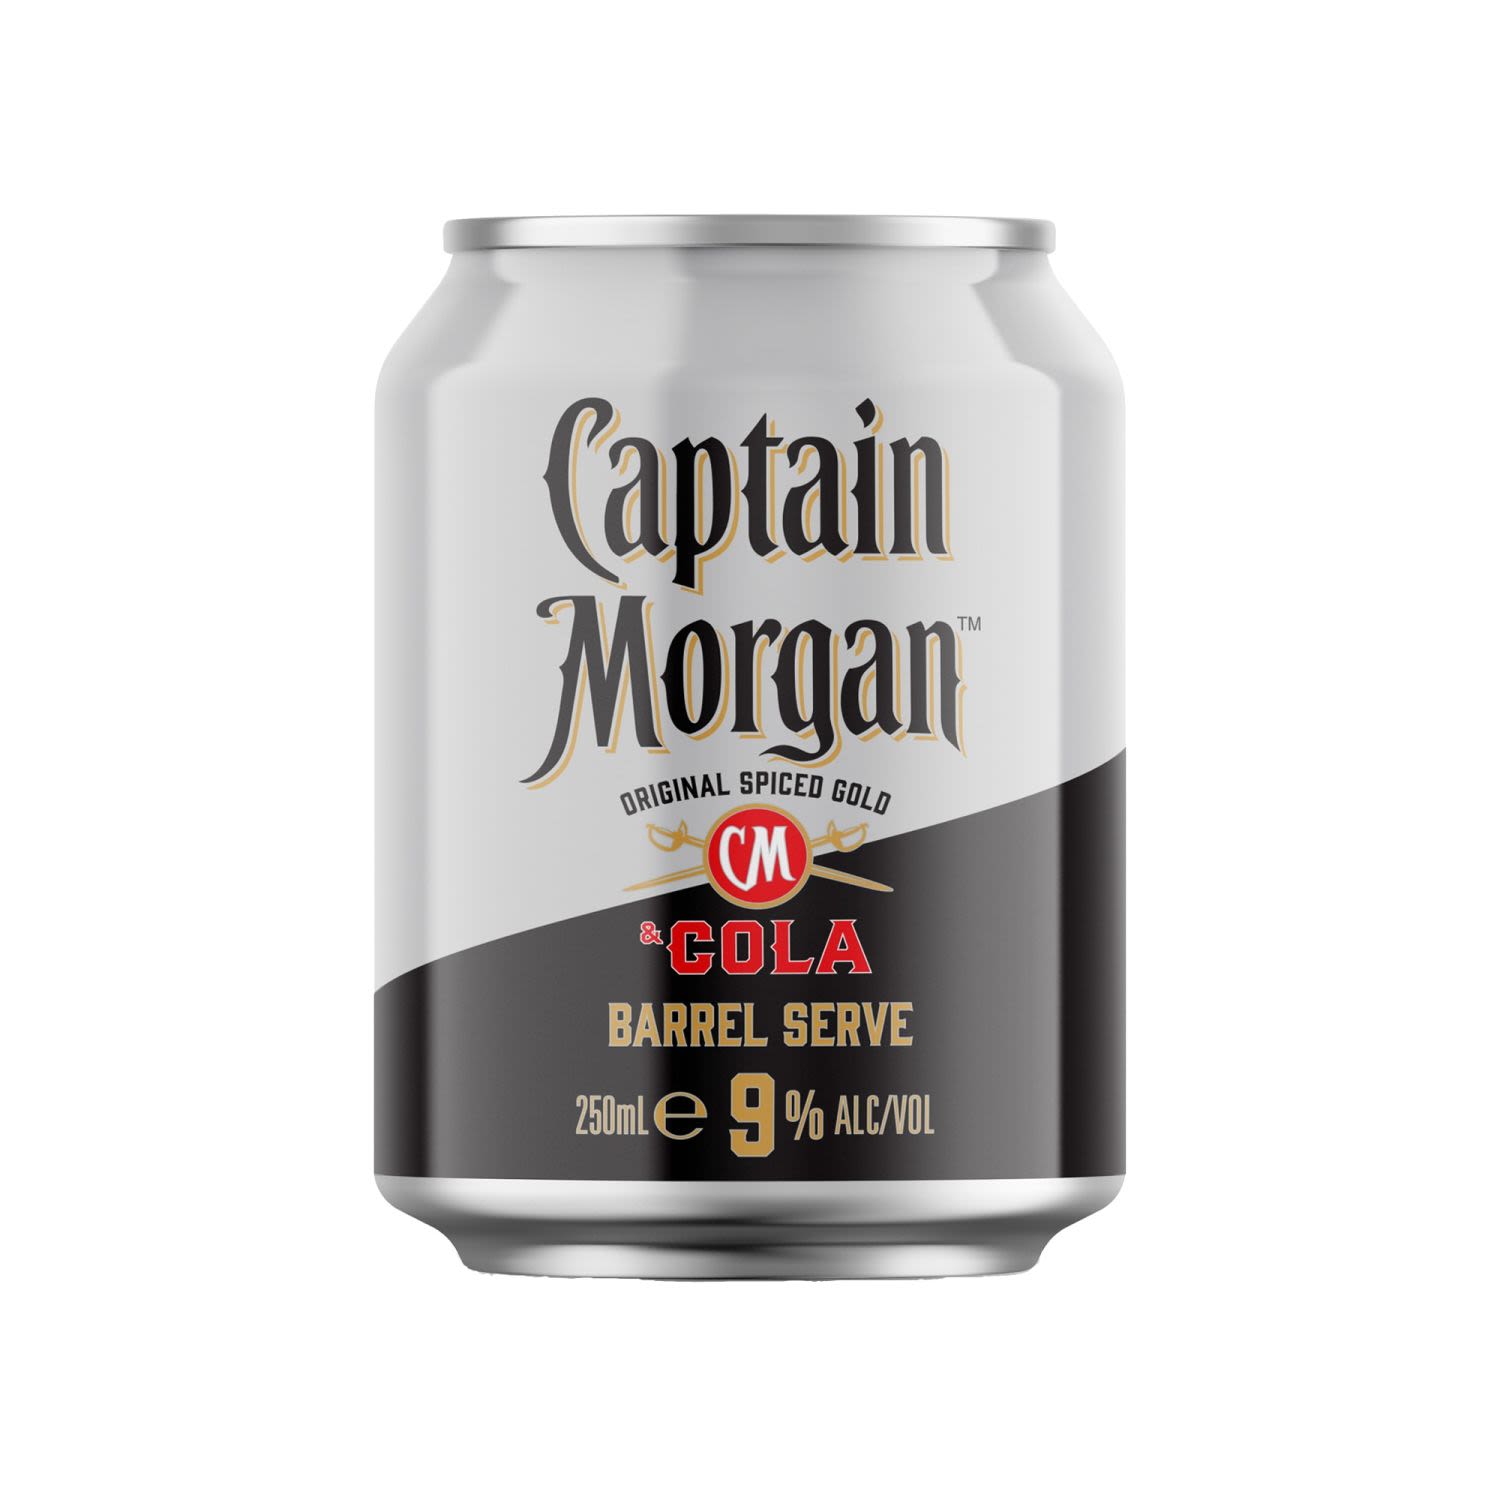 Captain Morgan & Cola Barrel Serve 9% Can 250mL